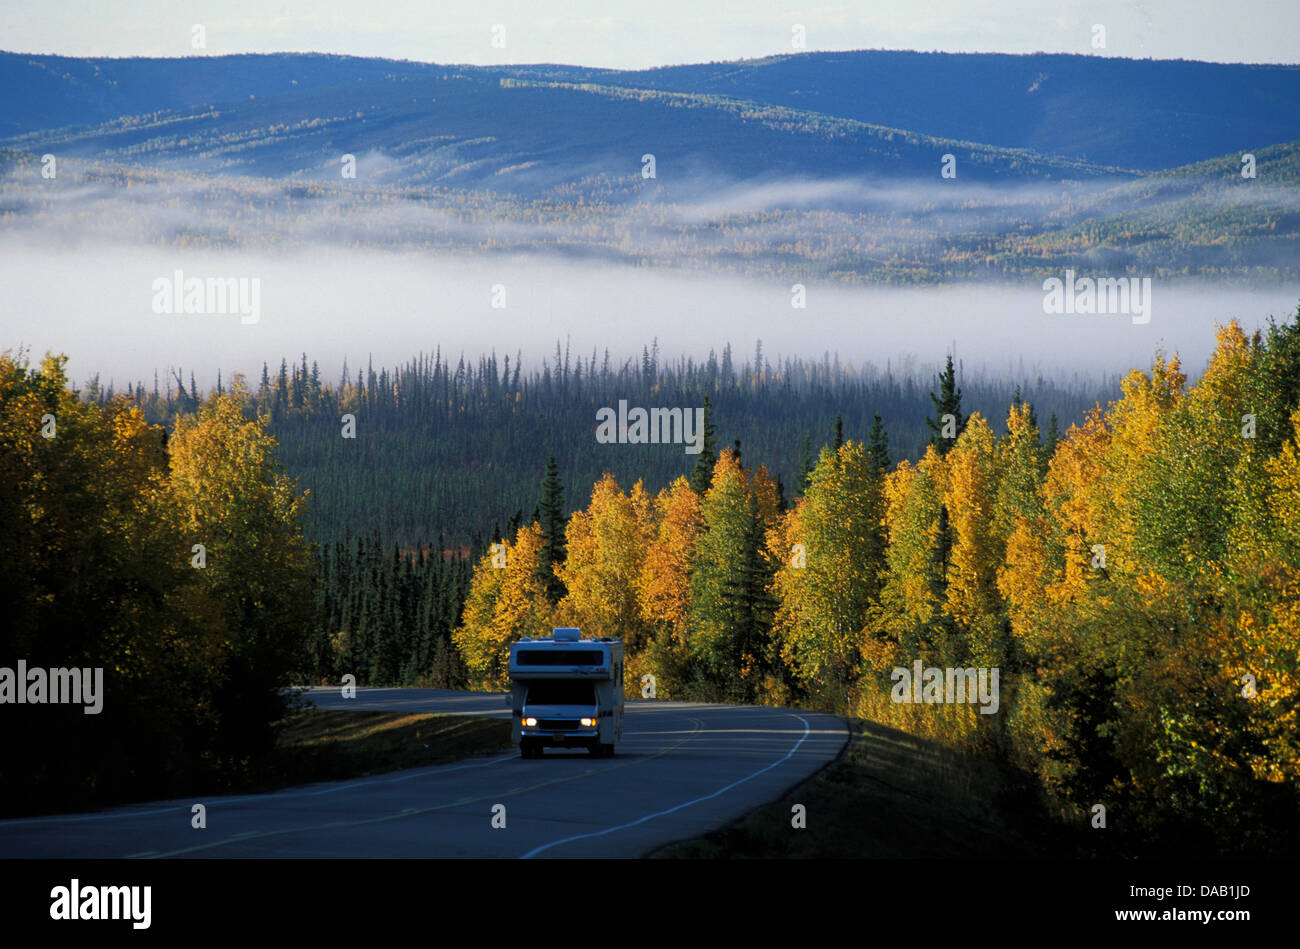 Moteur, accueil, Elliott Highway, Alaska, USA, camping, autoroute, route, forêt, arbres, automne, automne, récolte, brume, brouillard Banque D'Images